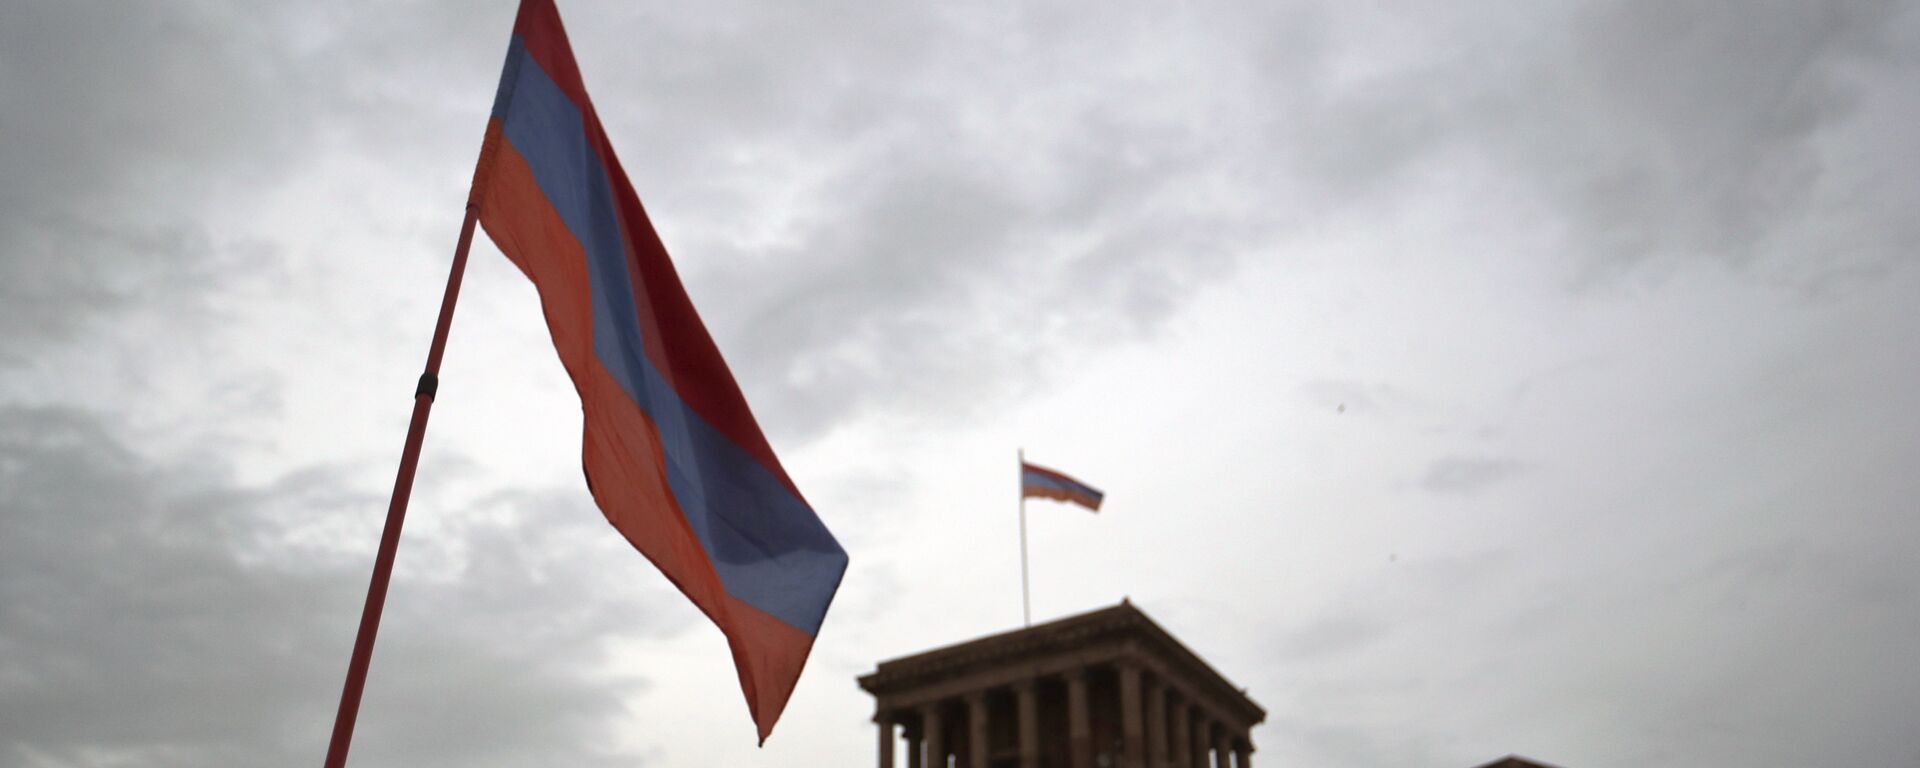 Bandera de Armenia - Sputnik Mundo, 1920, 18.02.2021